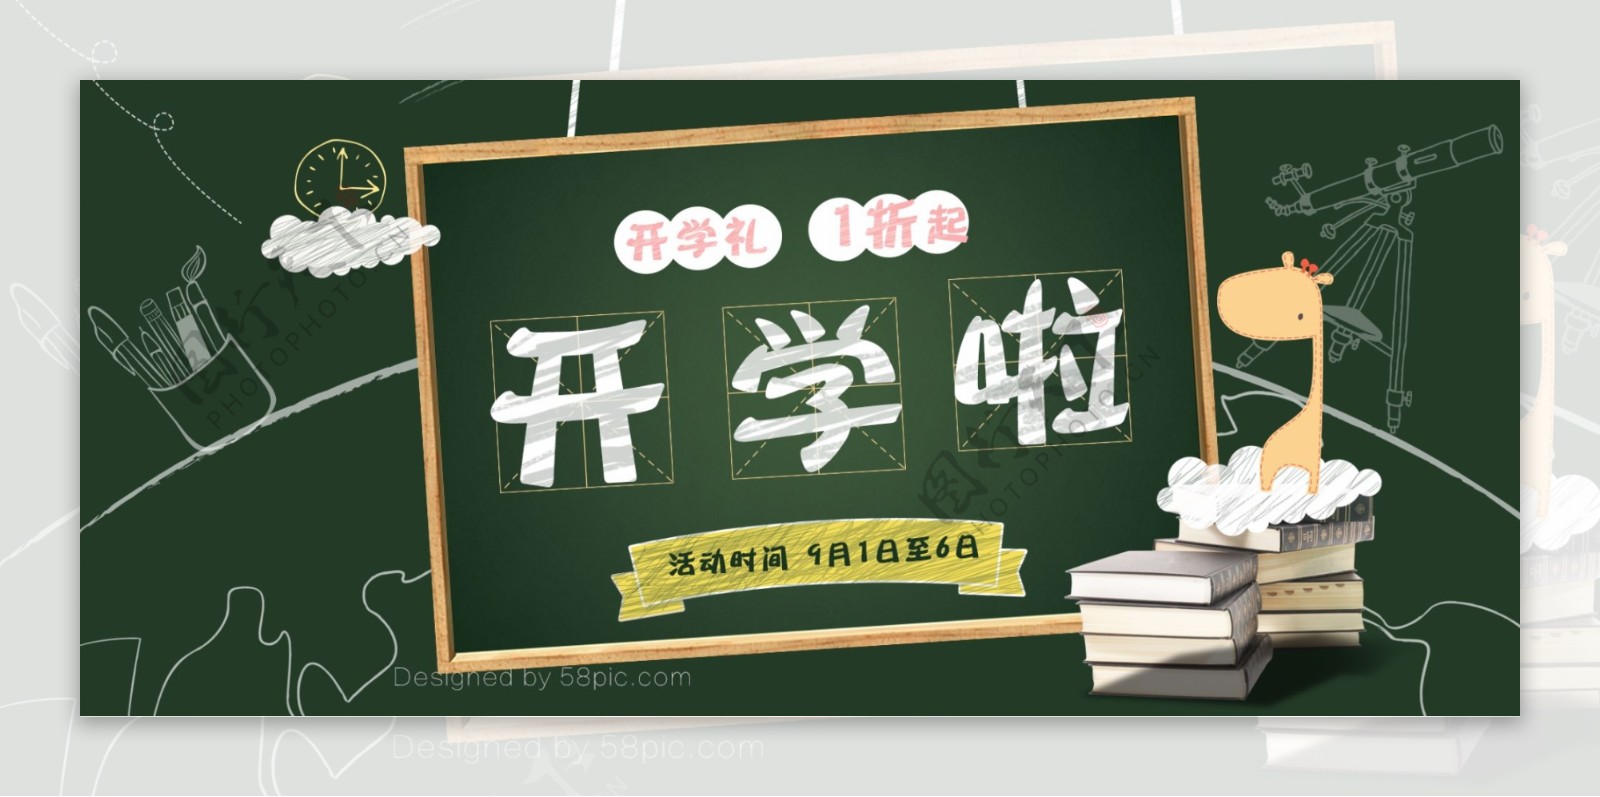 天猫淘宝天猫电商京东开学季促销文具书包海报banner模板